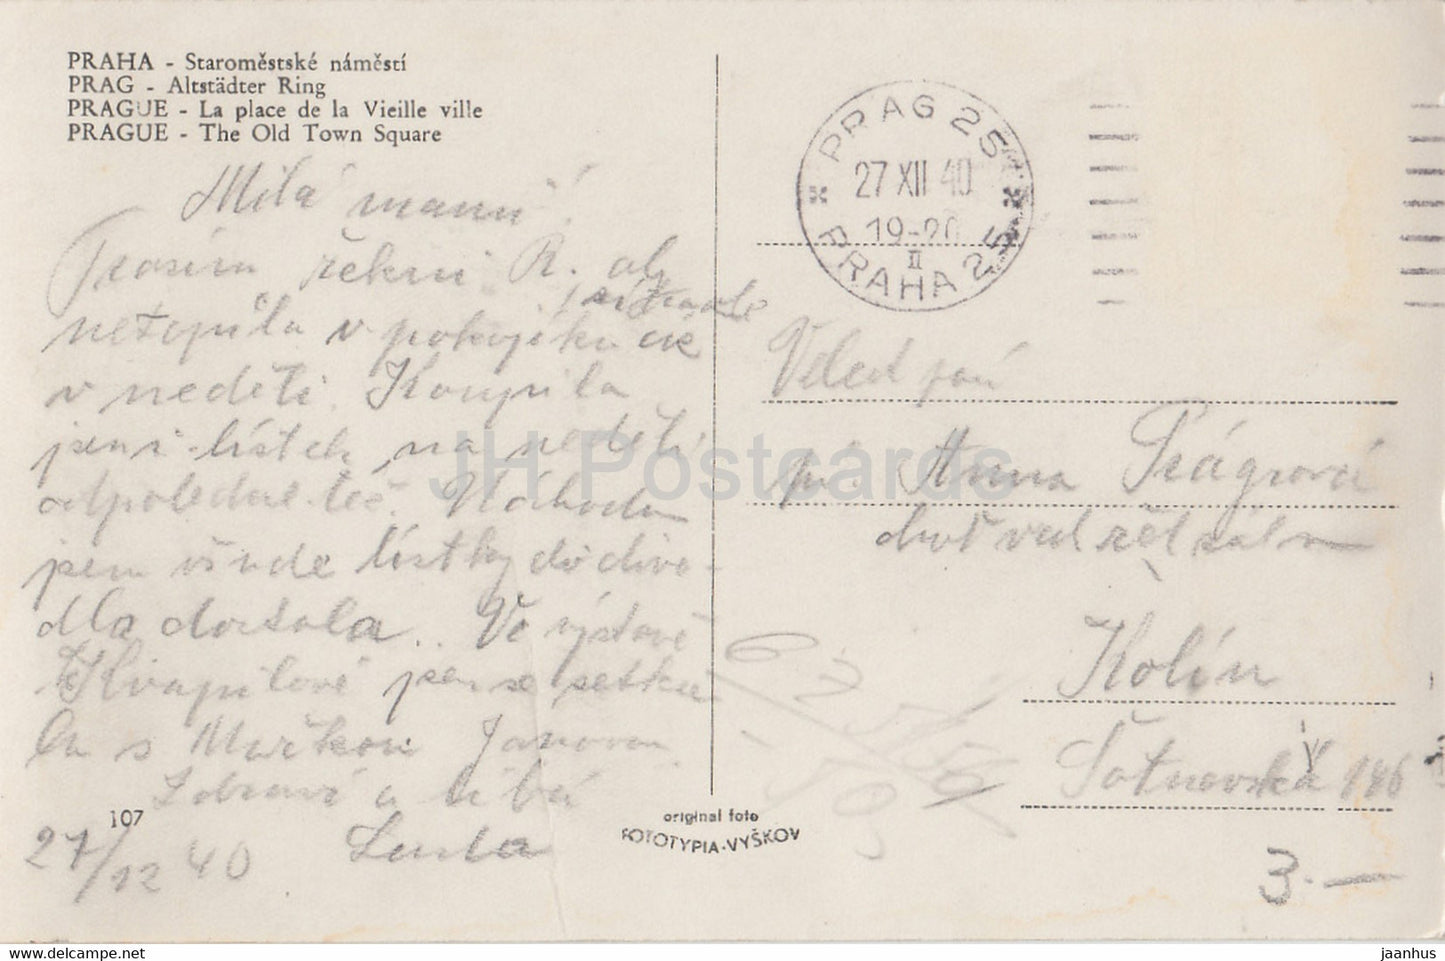 Praha - Prague - Staromestske namesti - Carte postale ancienne de la place de la Vieille Ville - 1940 - Tchécoslovaquie - République tchèque - utilisé